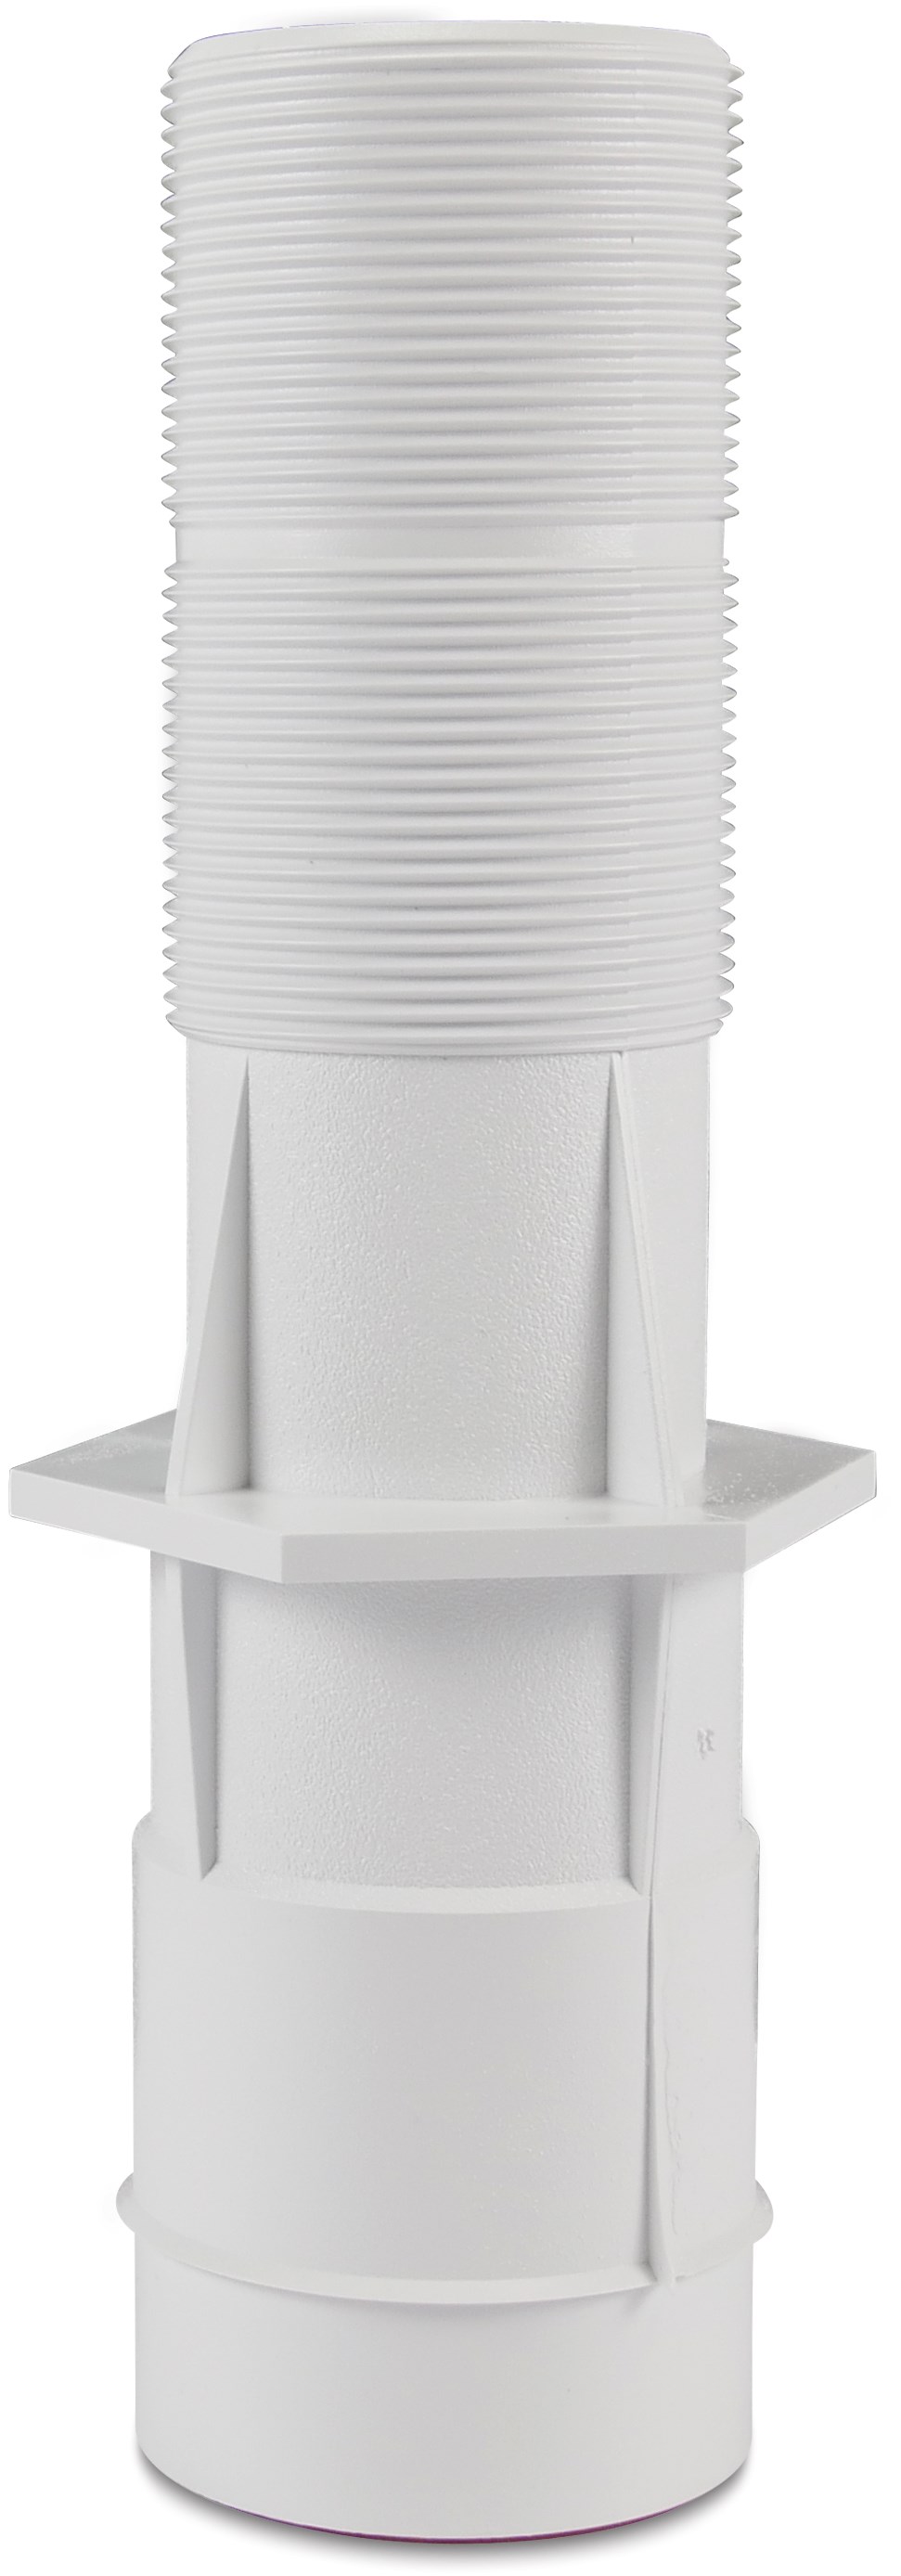 Hayward Mauerdurchführung PVC-U 2" x 2" x 50 mm Innengewinde x Außengewinde x Klebemuffe Weiß 250 mm Mini-LED